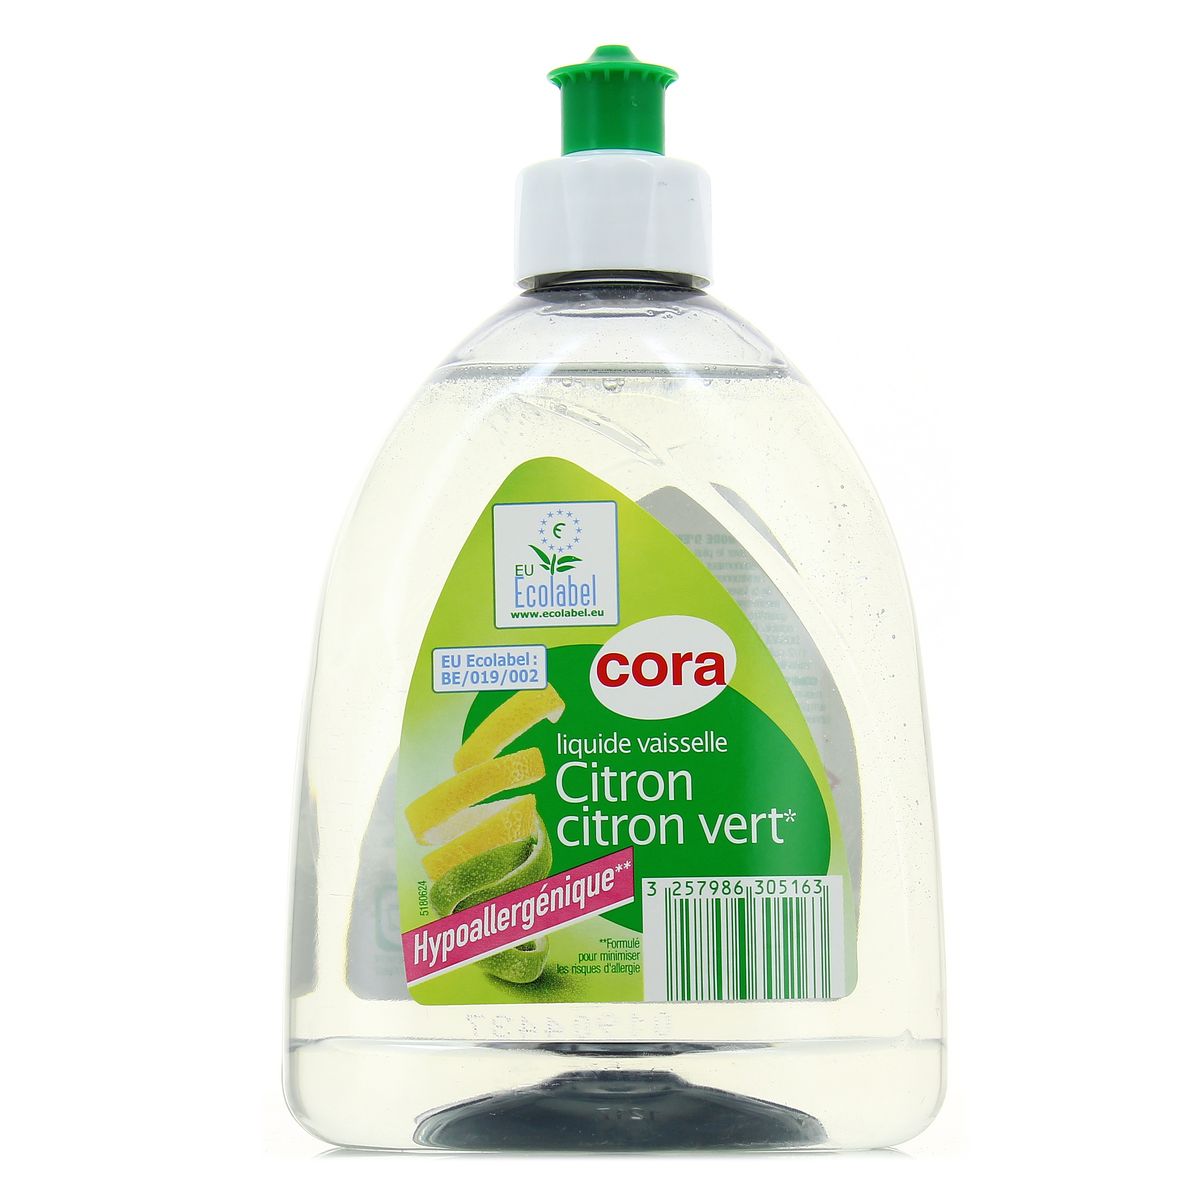 Achat Cora Liquide vaisselle au citron vert hypoallergénique Ecolabel